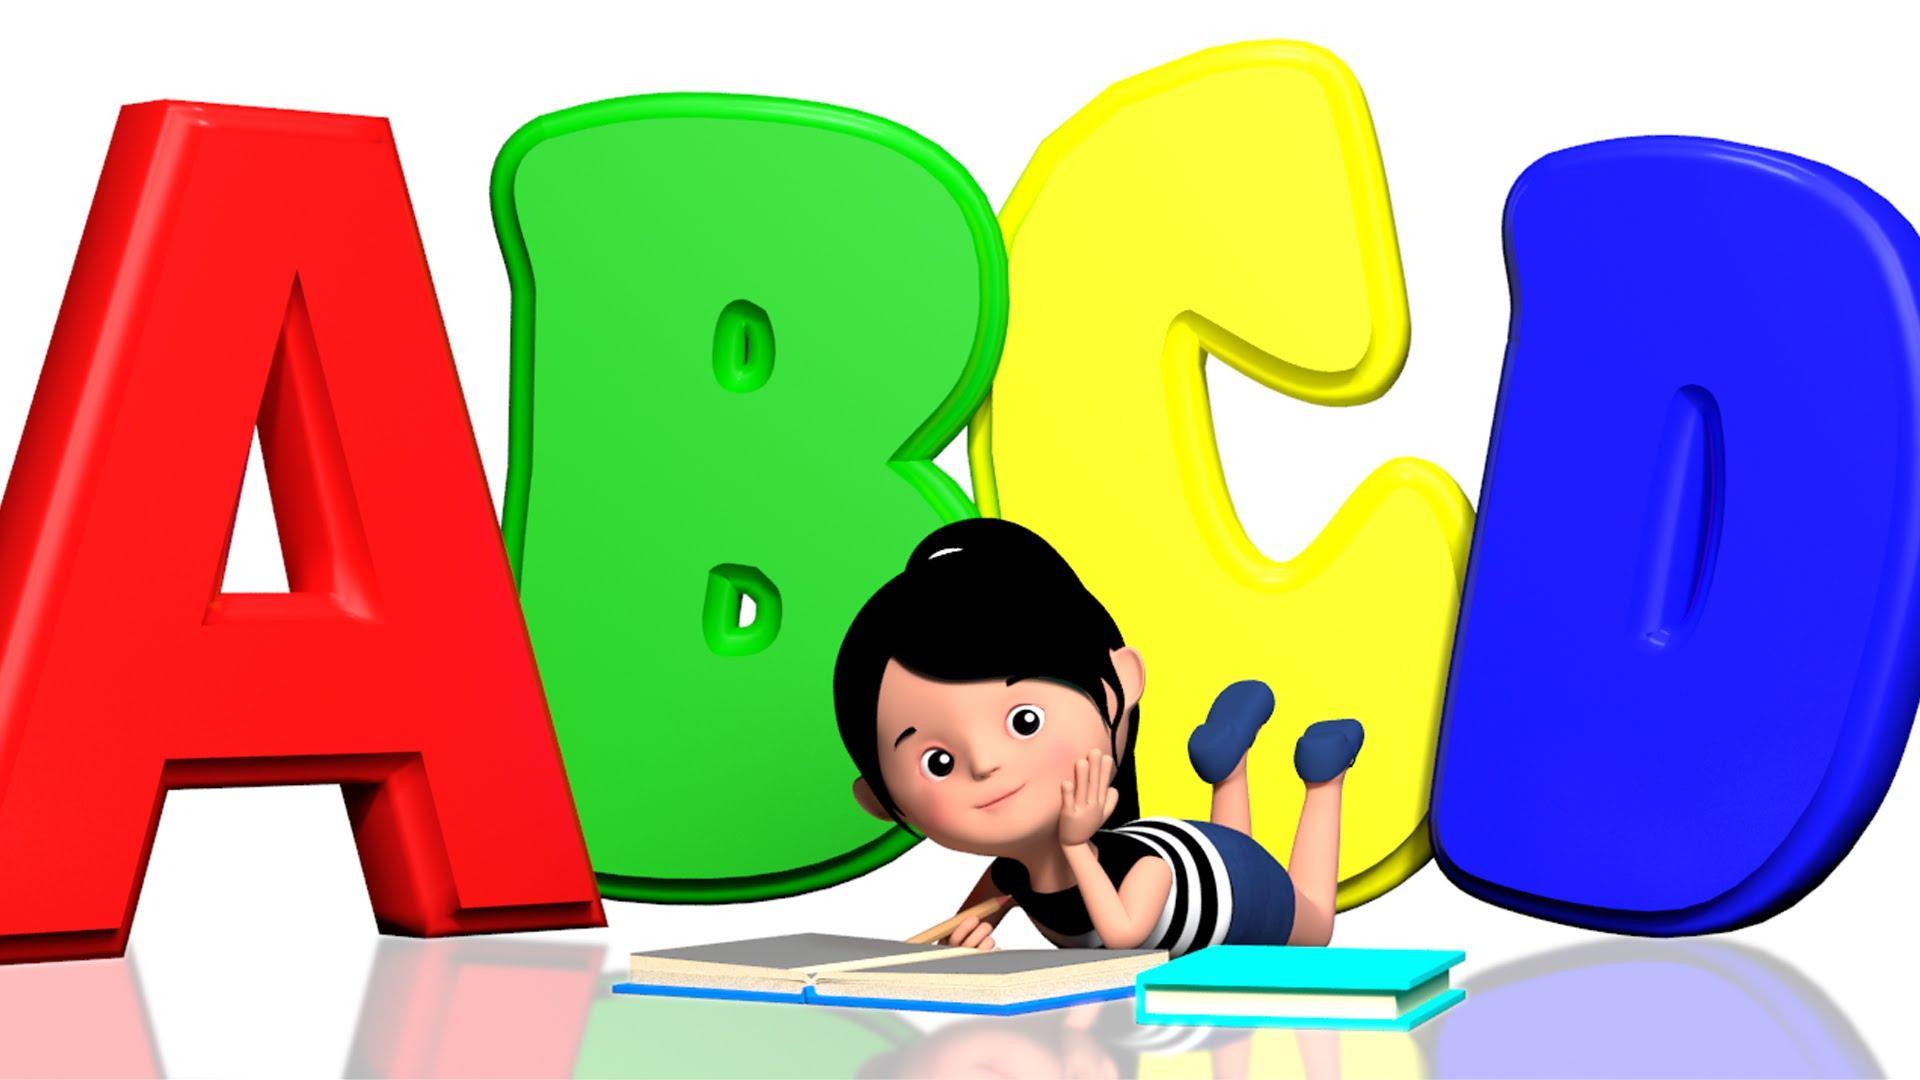 Cartoon learn english. ABC для детей. Буквы для детей. Детские буквы алфавита. Английский для детей.